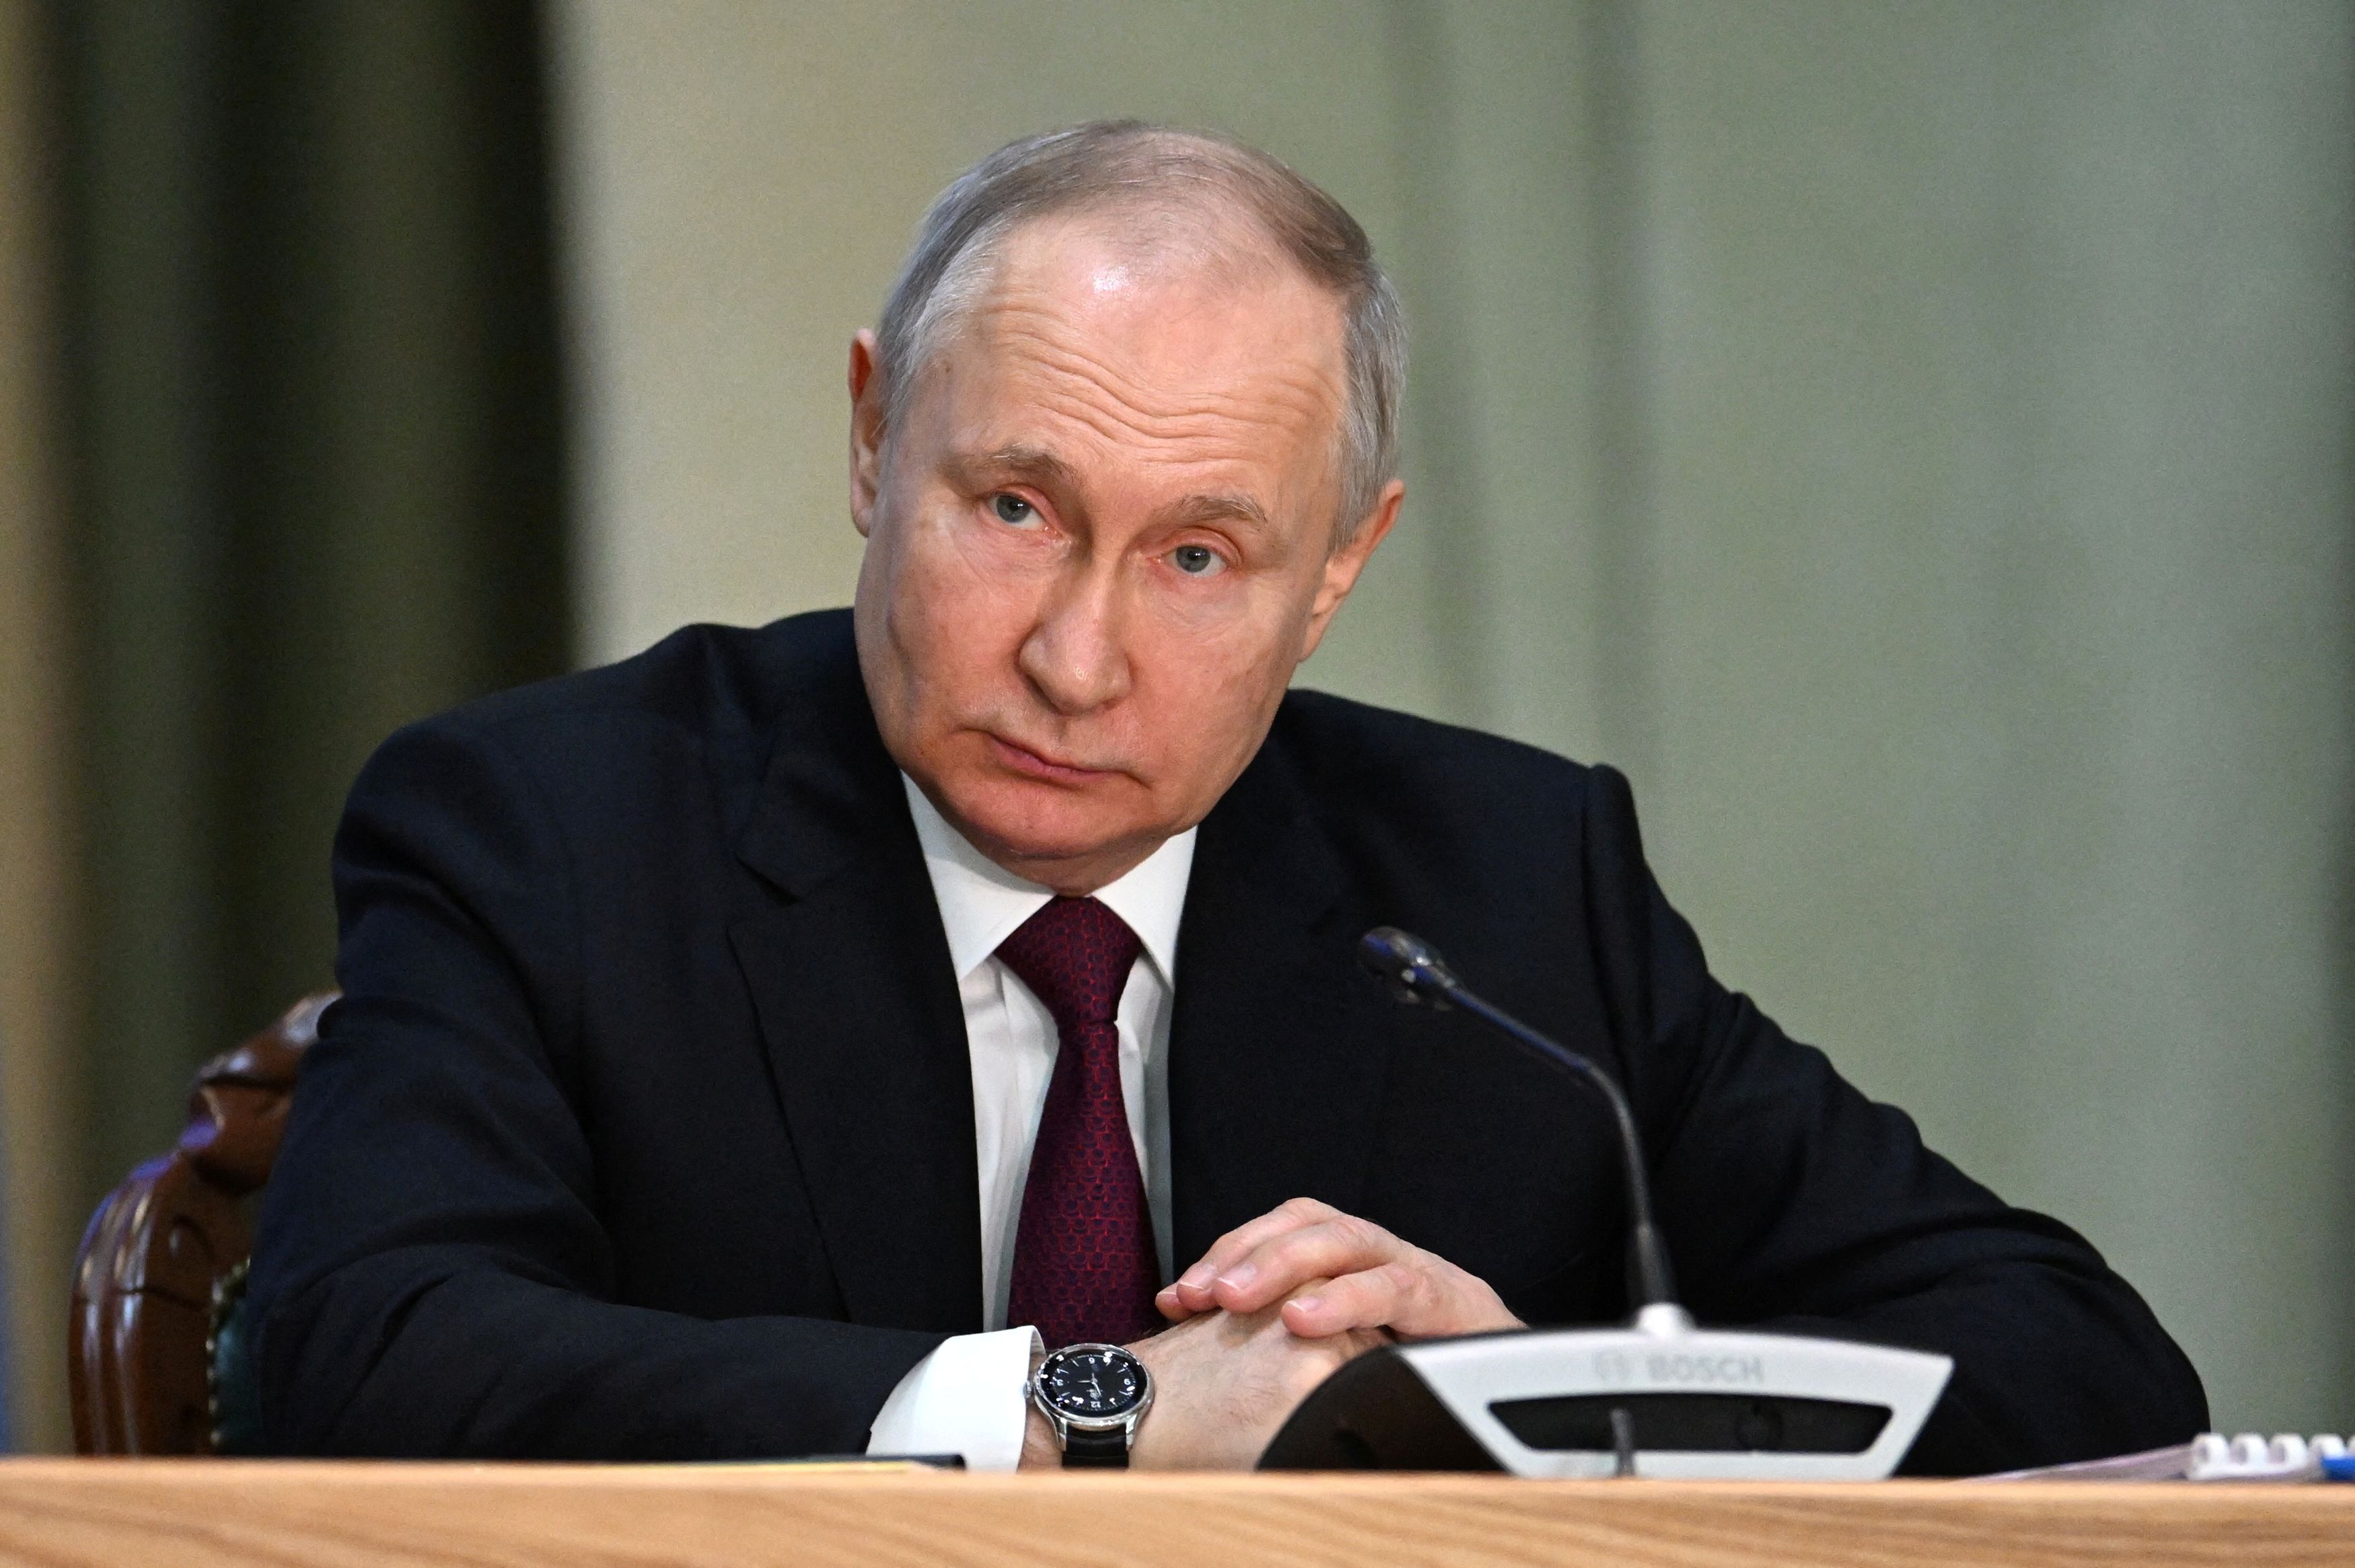 International Criminal Court: Arrest warrant for Vladimir Putin for war crimes